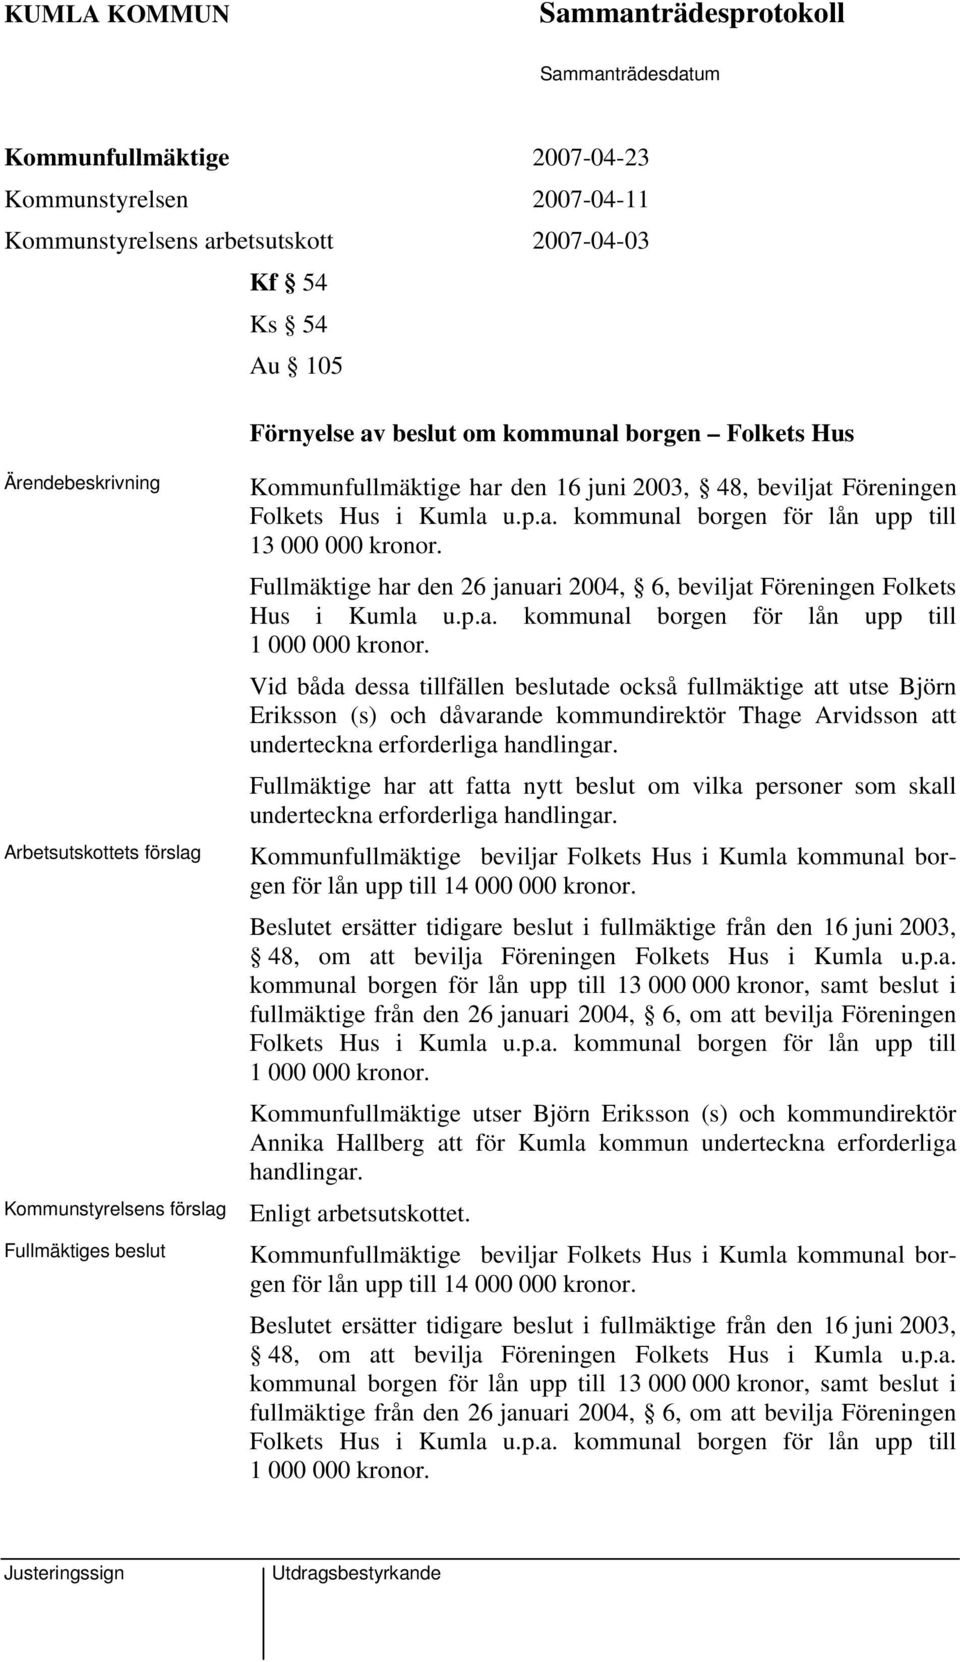 Fullmäktige har den 26 januari 2004, 6, beviljat Föreningen Folkets Hus i Kumla u.p.a. kommunal borgen för lån upp till 1 000 000 kronor.